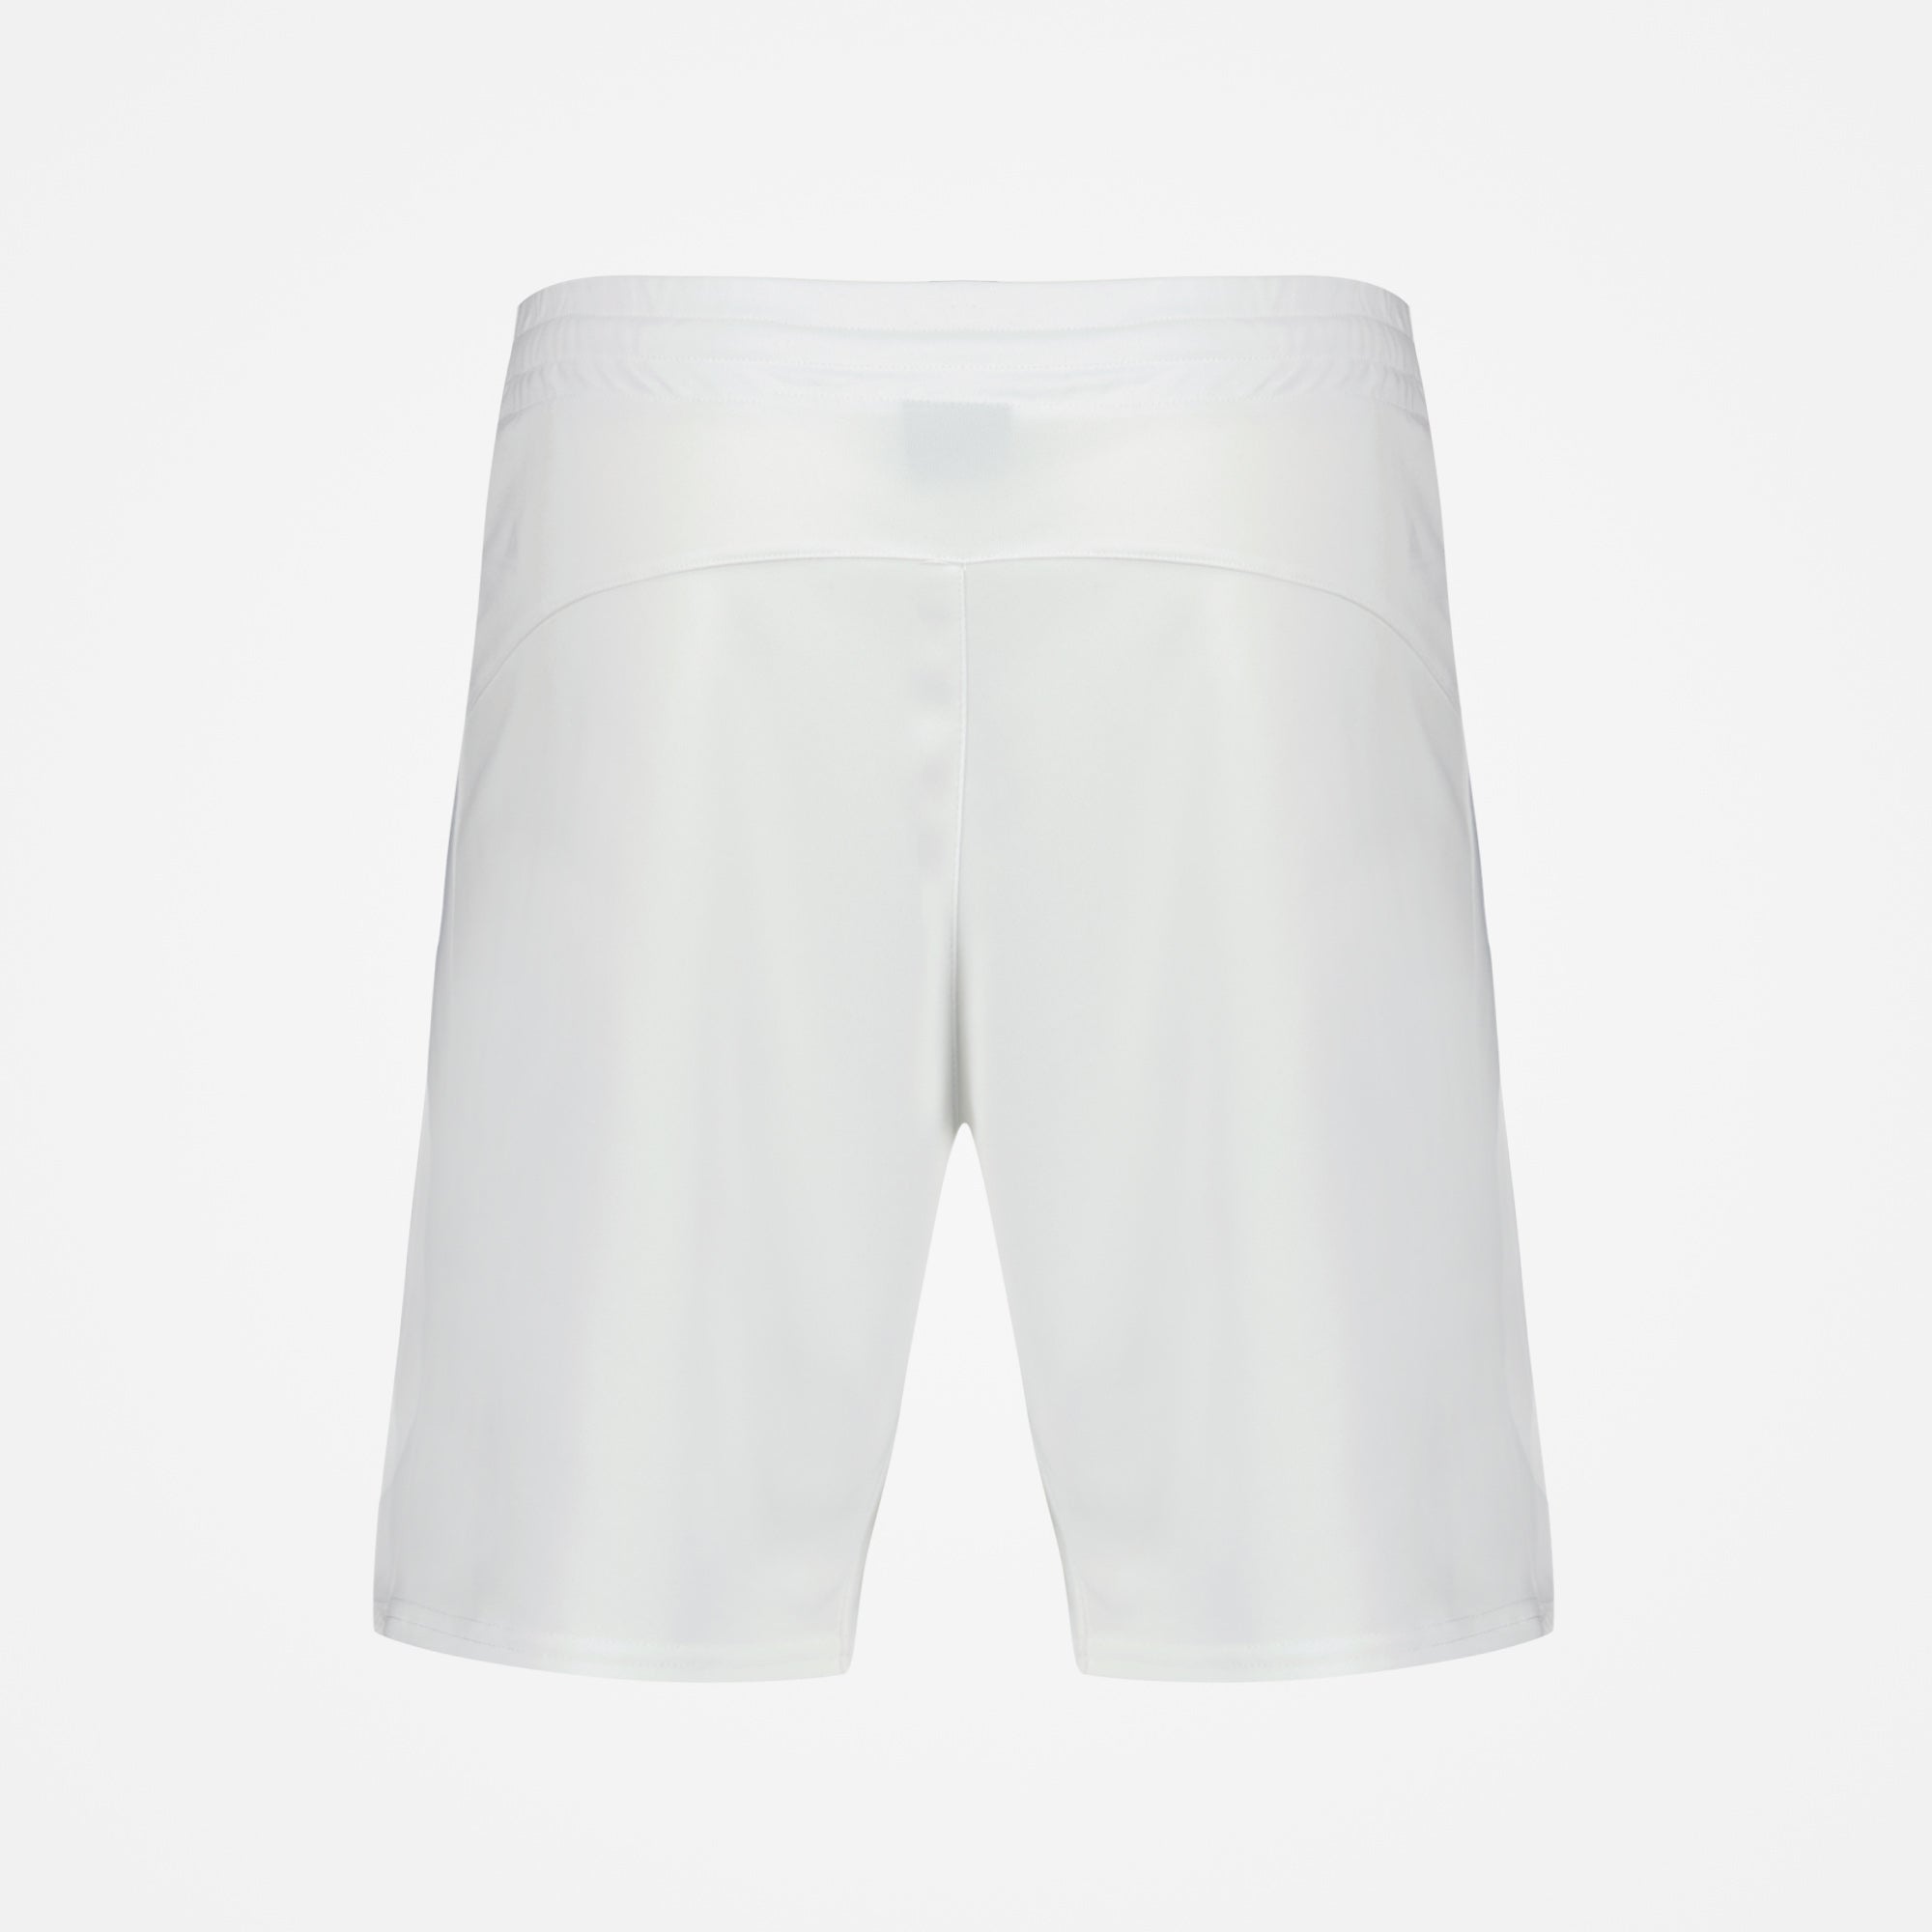 2320143-TENNIS Short N°3 M new optical white/dre  | Shorts for men